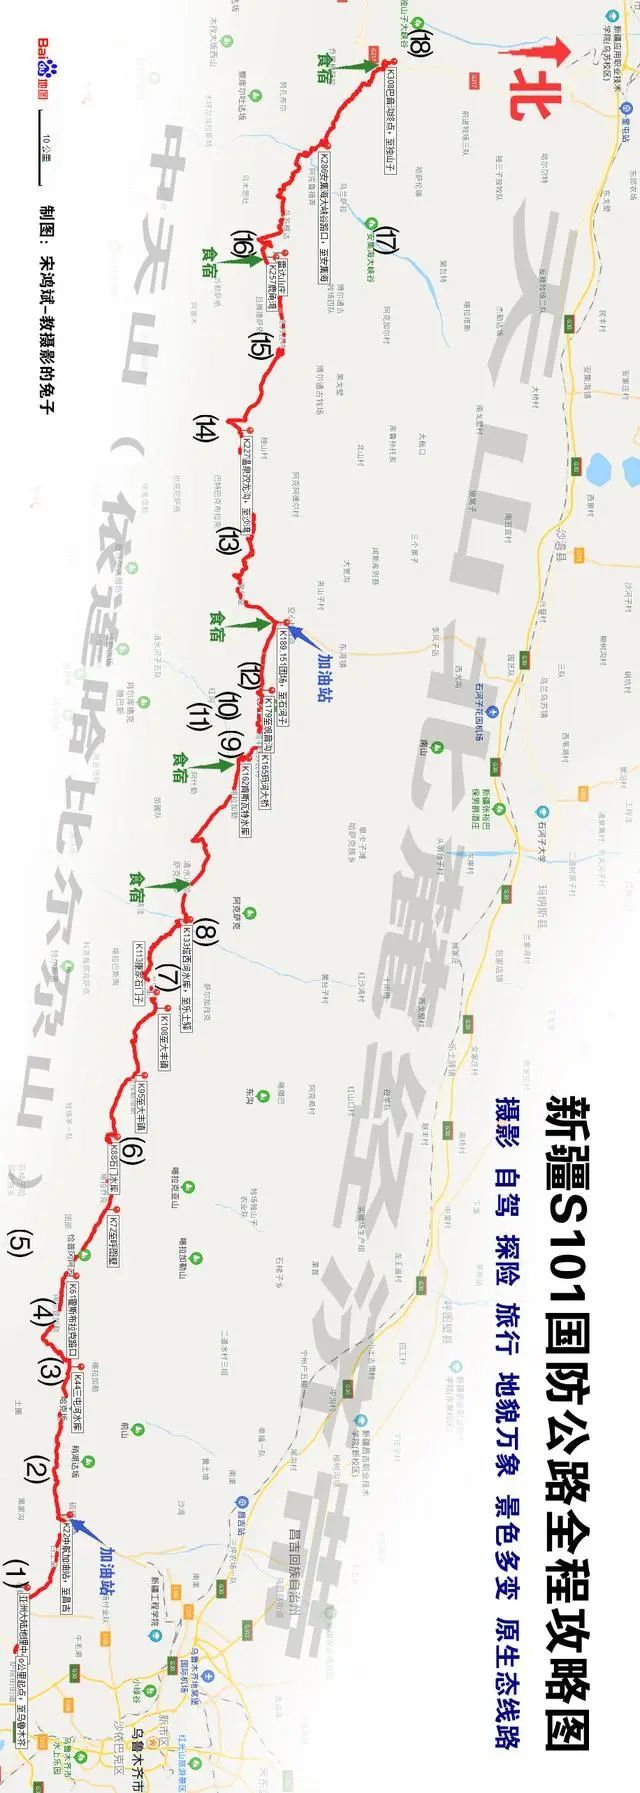 新疆s101省道路线图图片